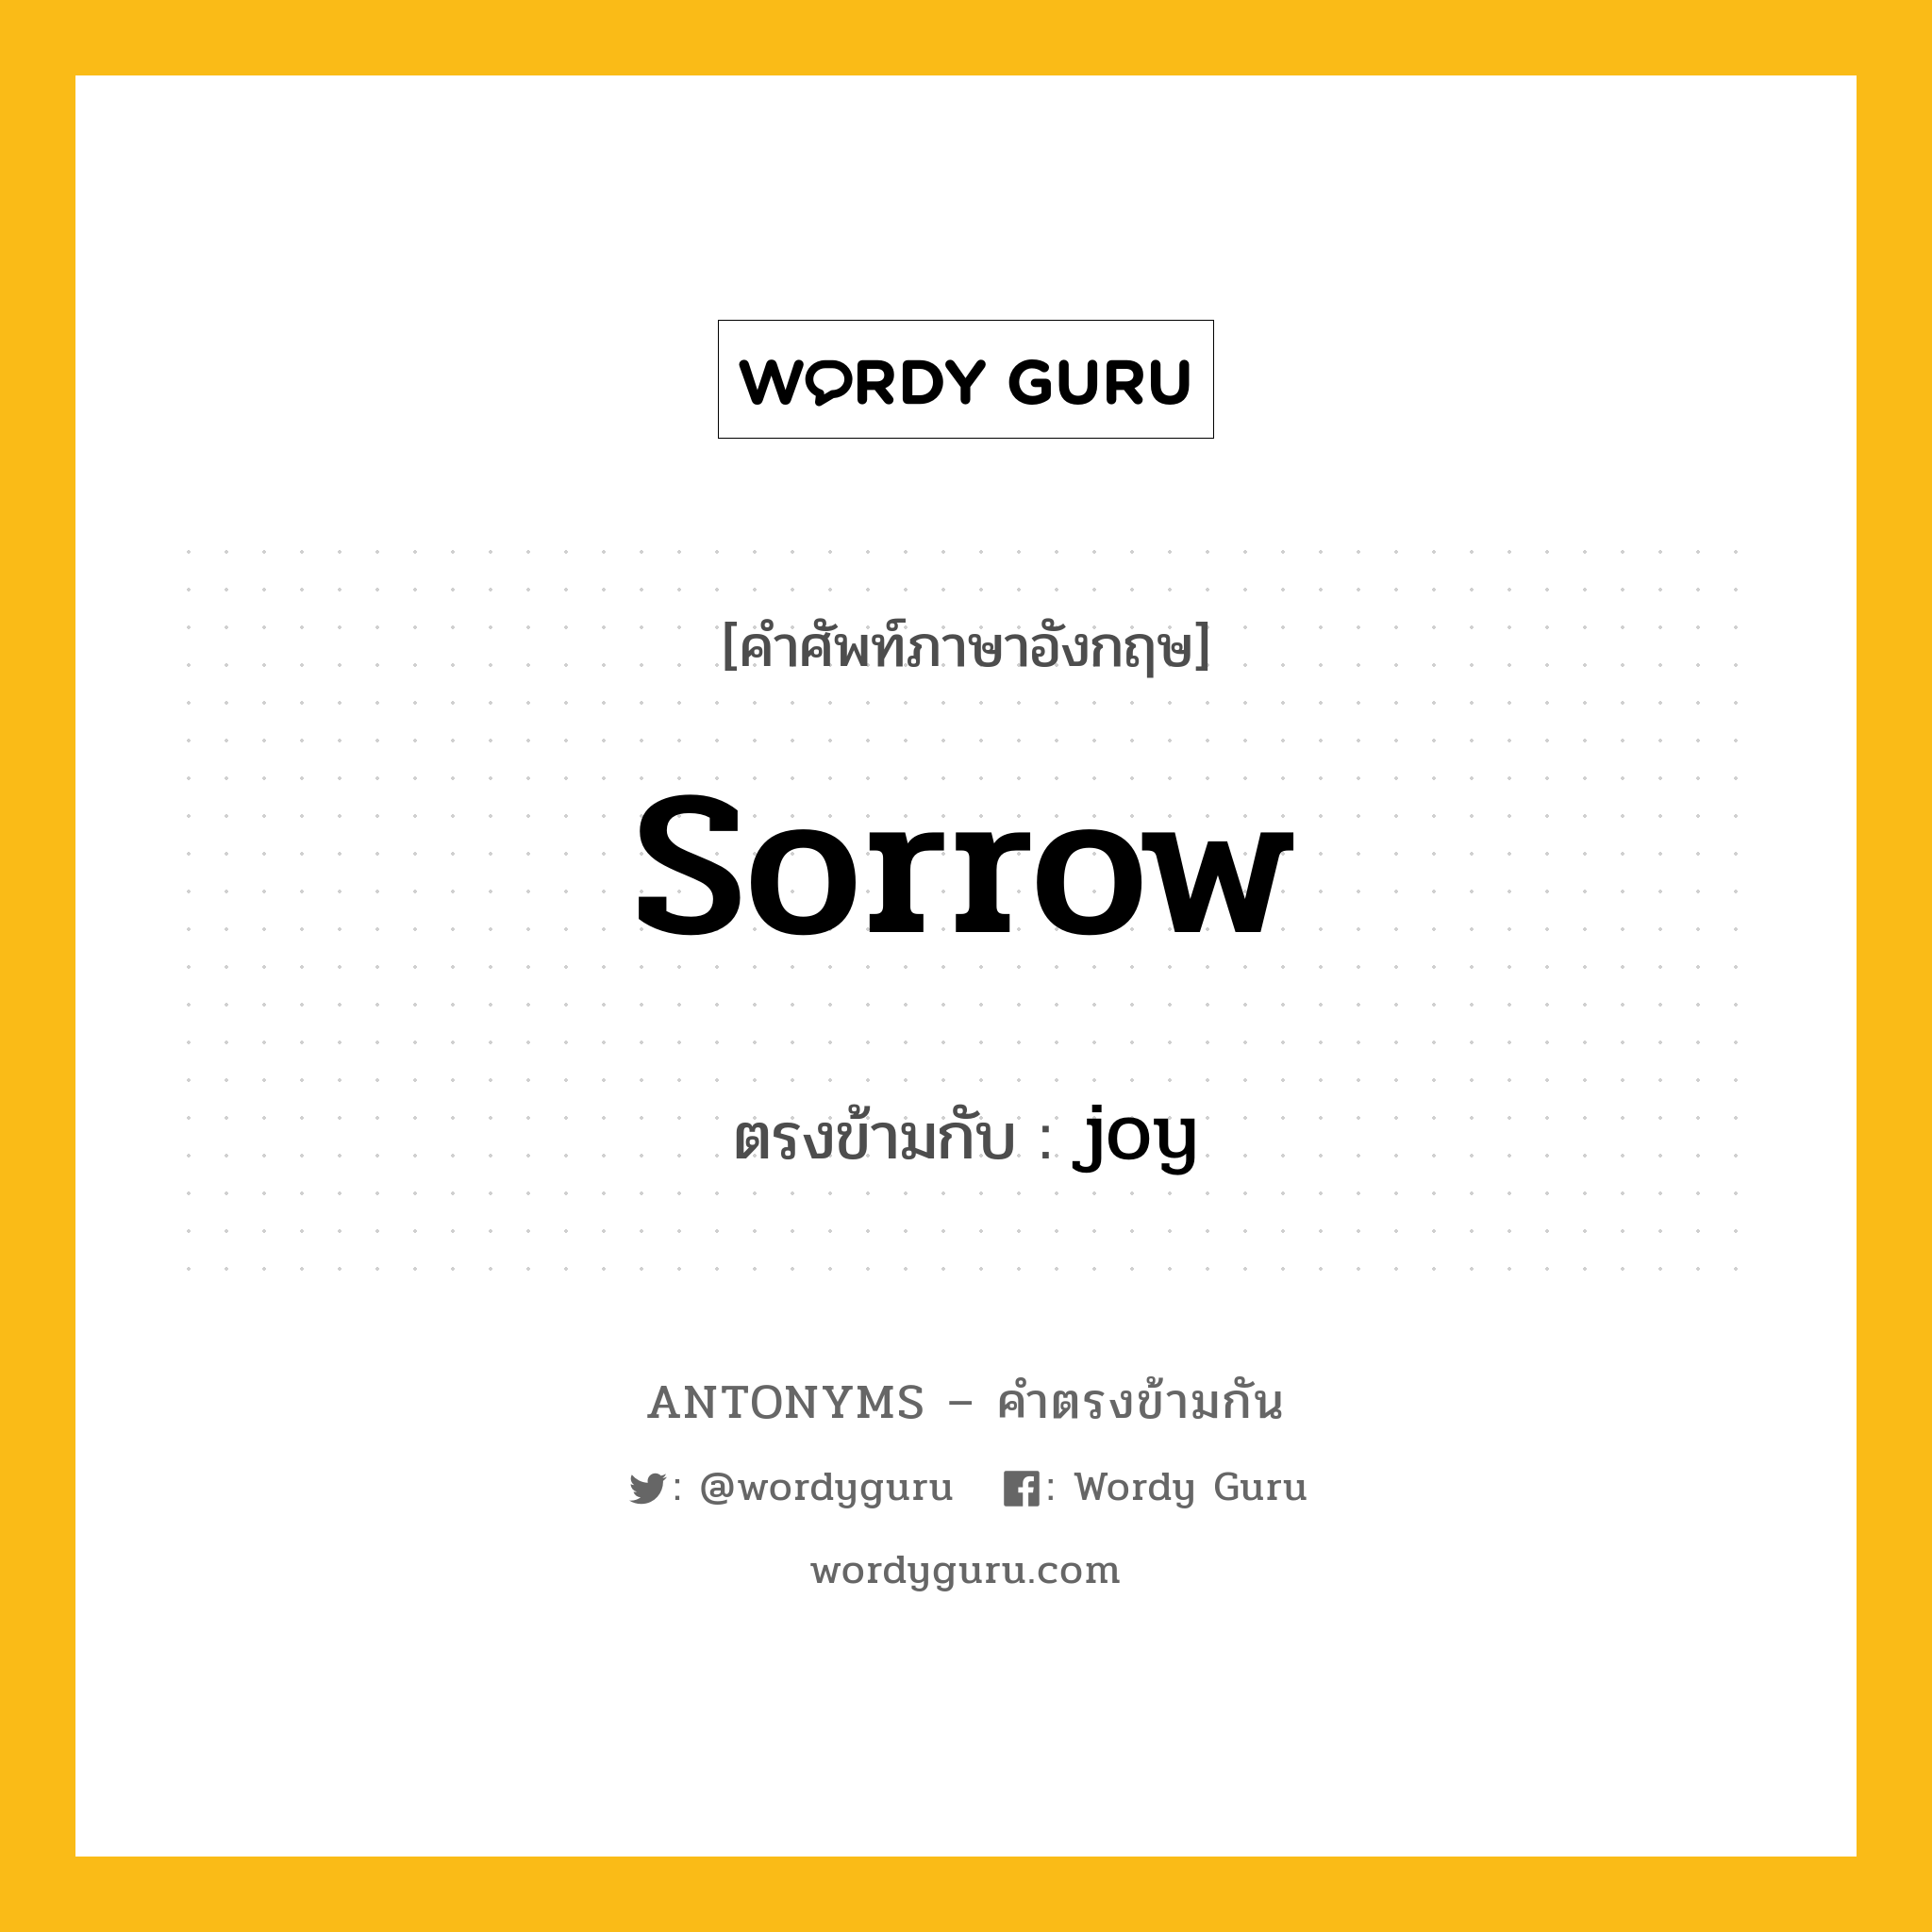 sorrow เป็นคำตรงข้ามกับคำไหนบ้าง?, คำศัพท์ภาษาอังกฤษ sorrow ตรงข้ามกับ joy หมวด joy